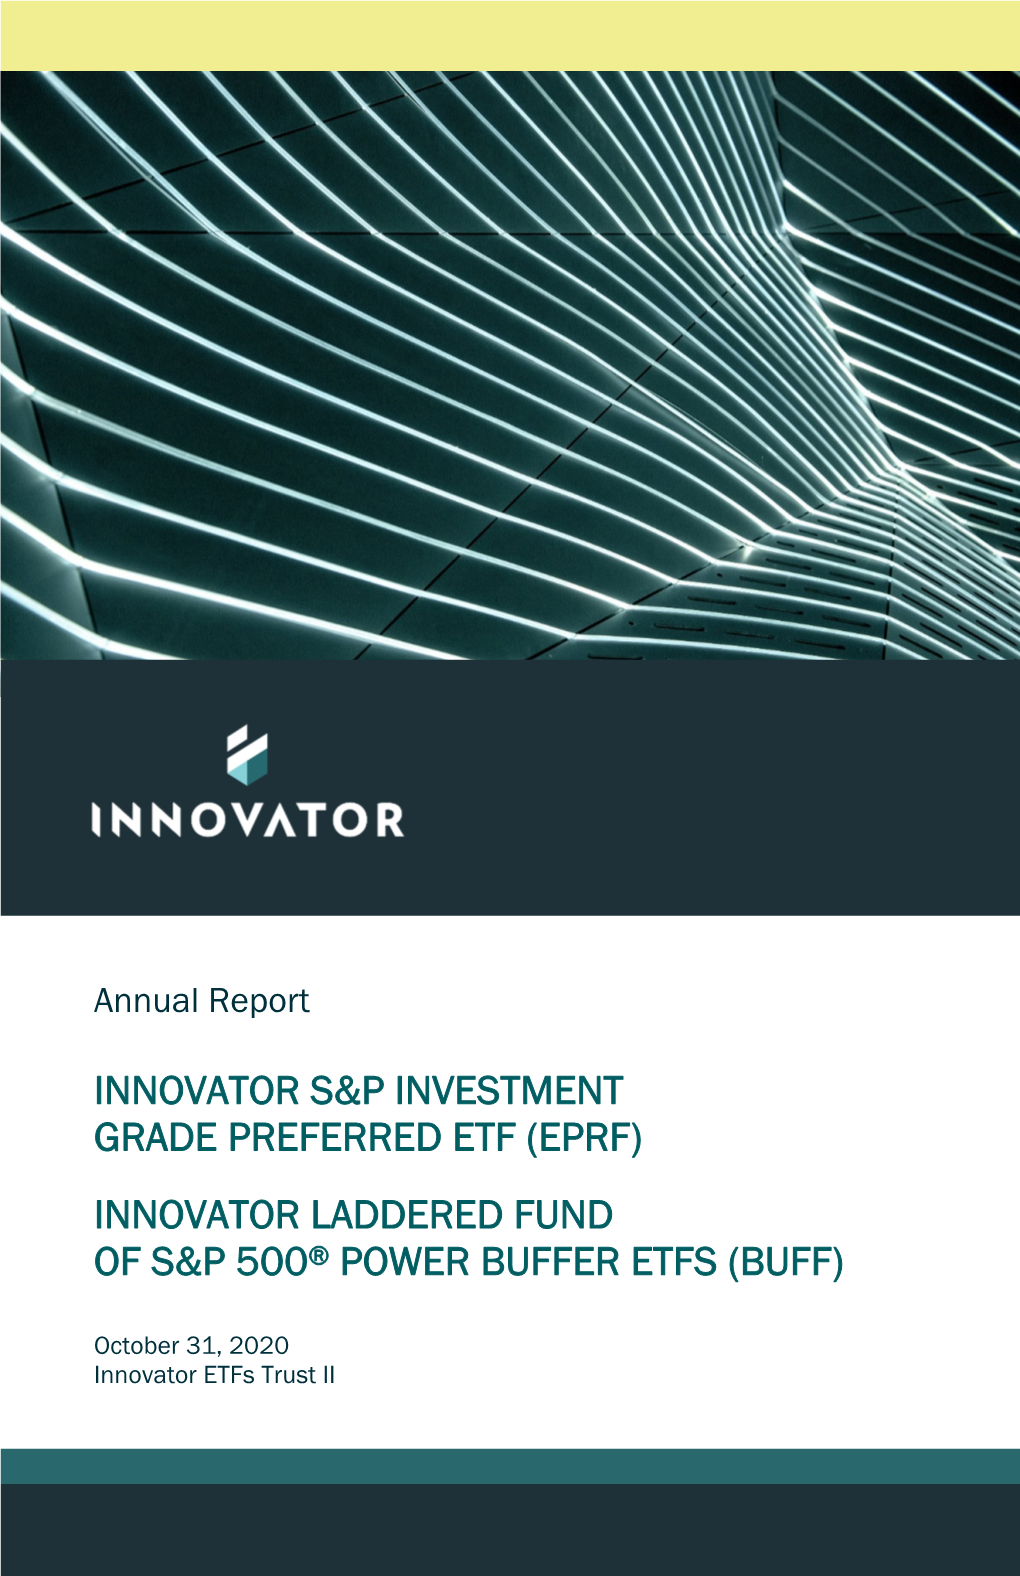 Innovator S&P Investment Grade Preferred Etf (Eprf